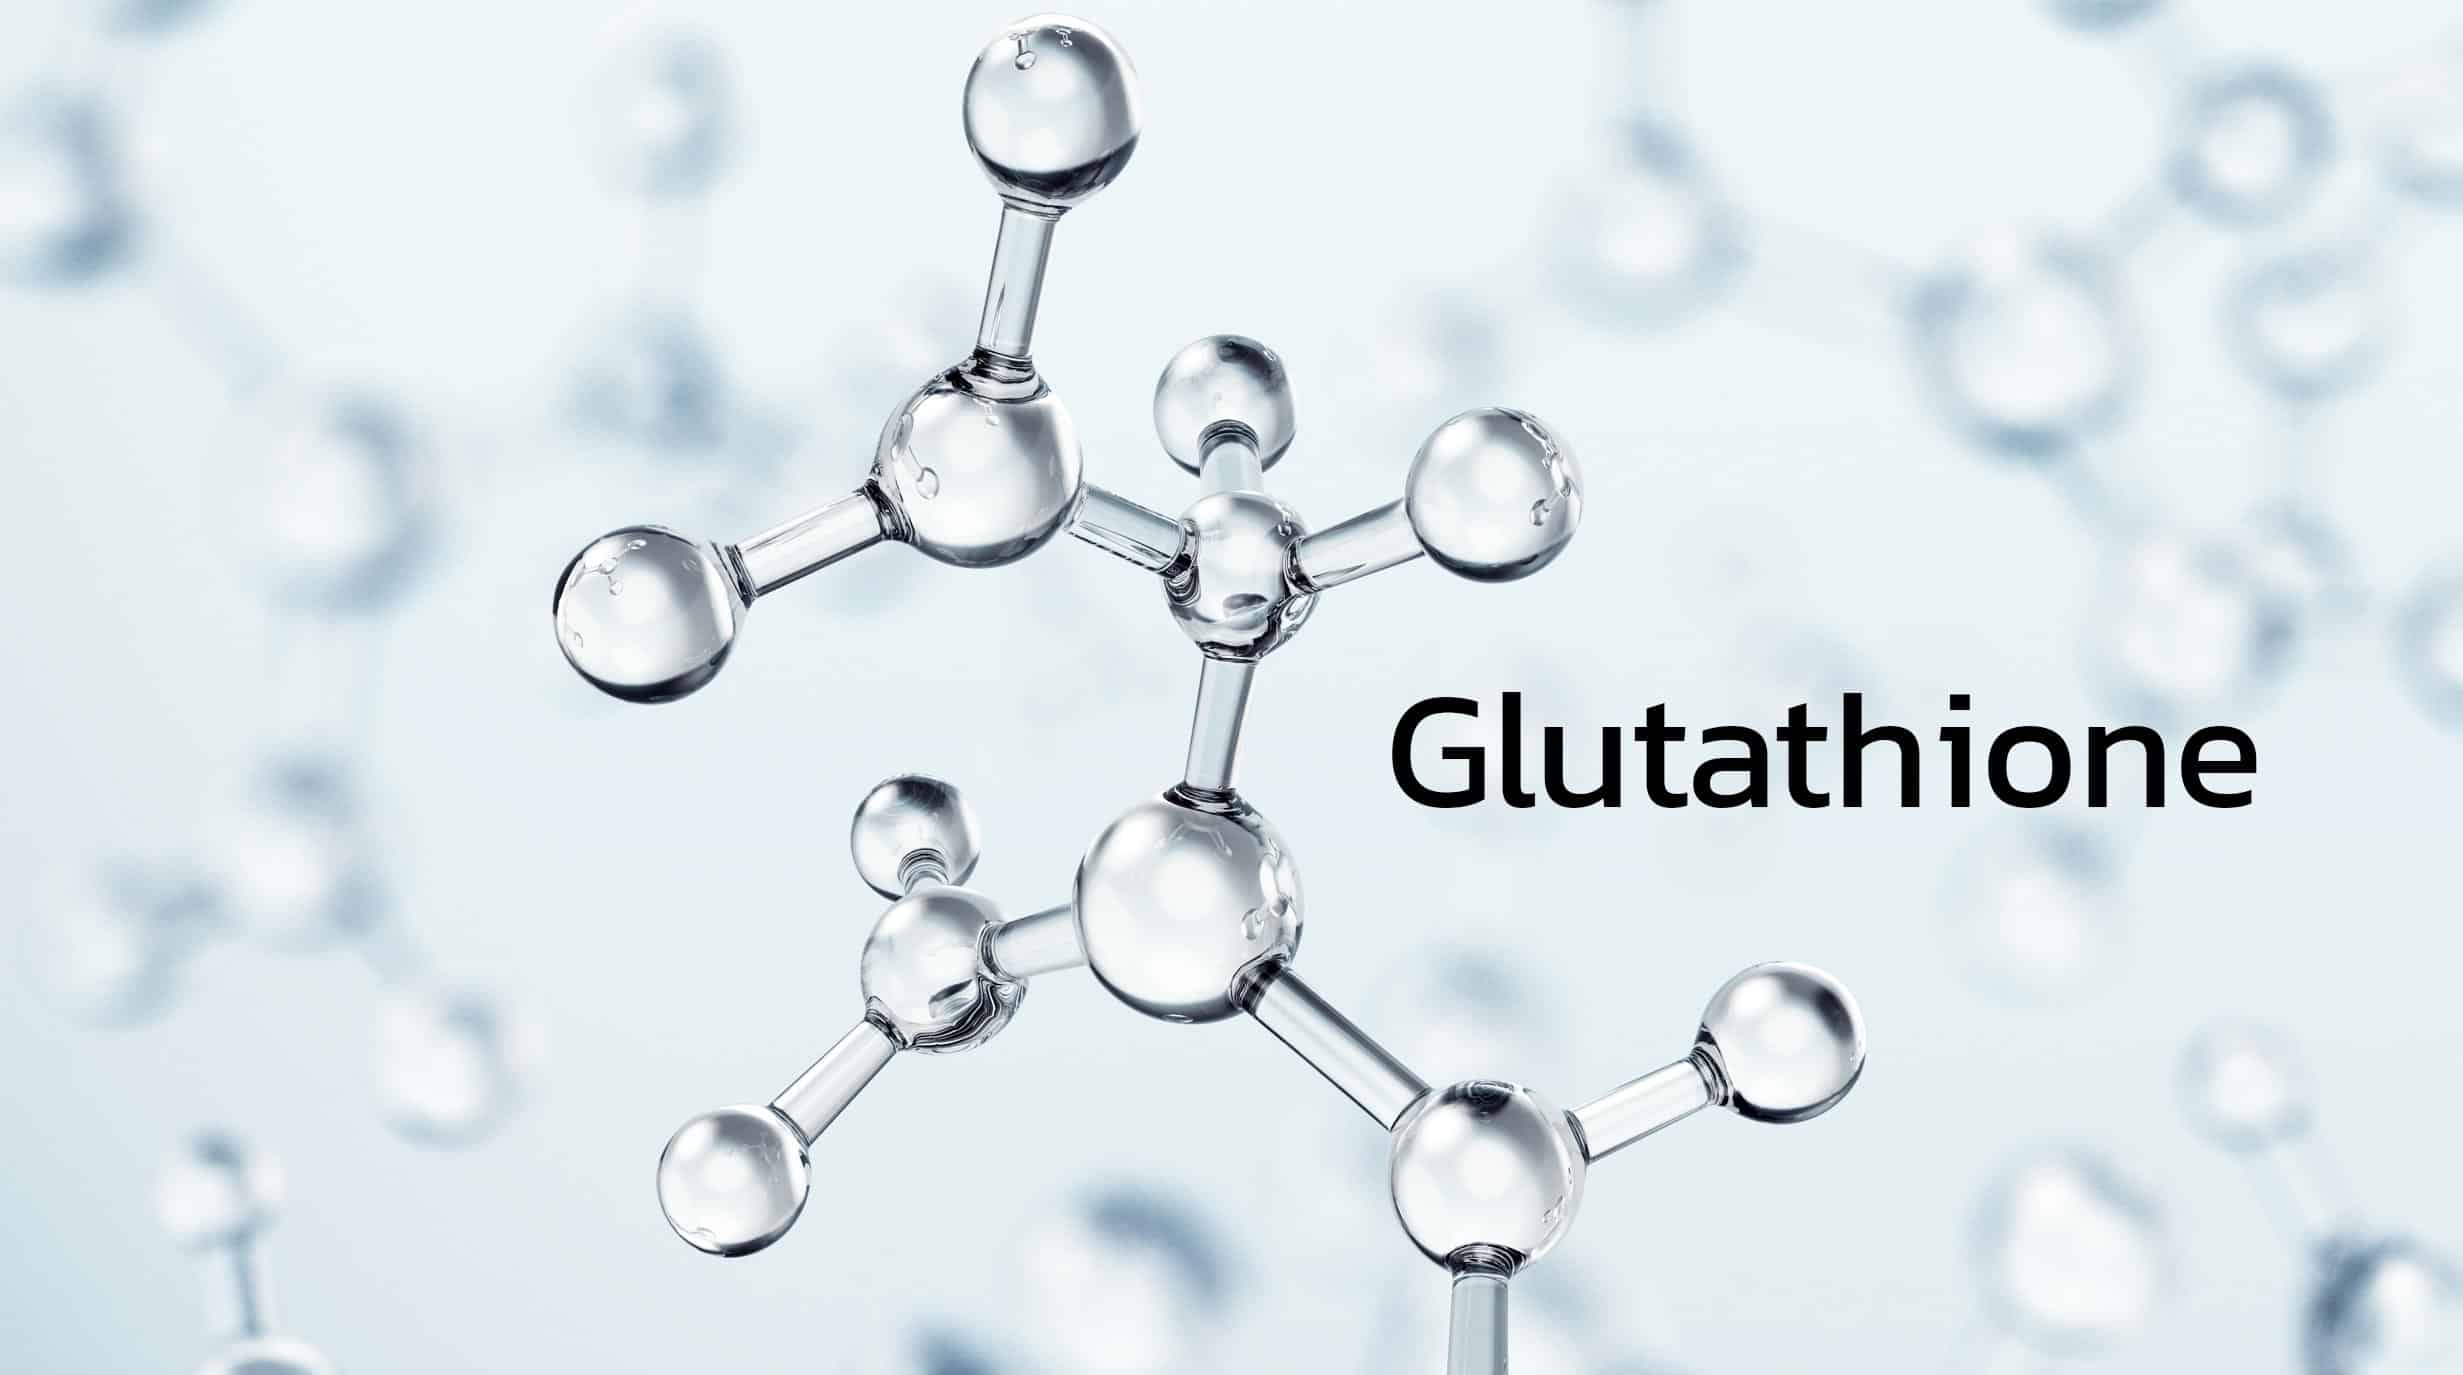 กลูต้าไธโอน (Glutathione) ช่วยให้ผิวขาวได้จริงหรือไม่